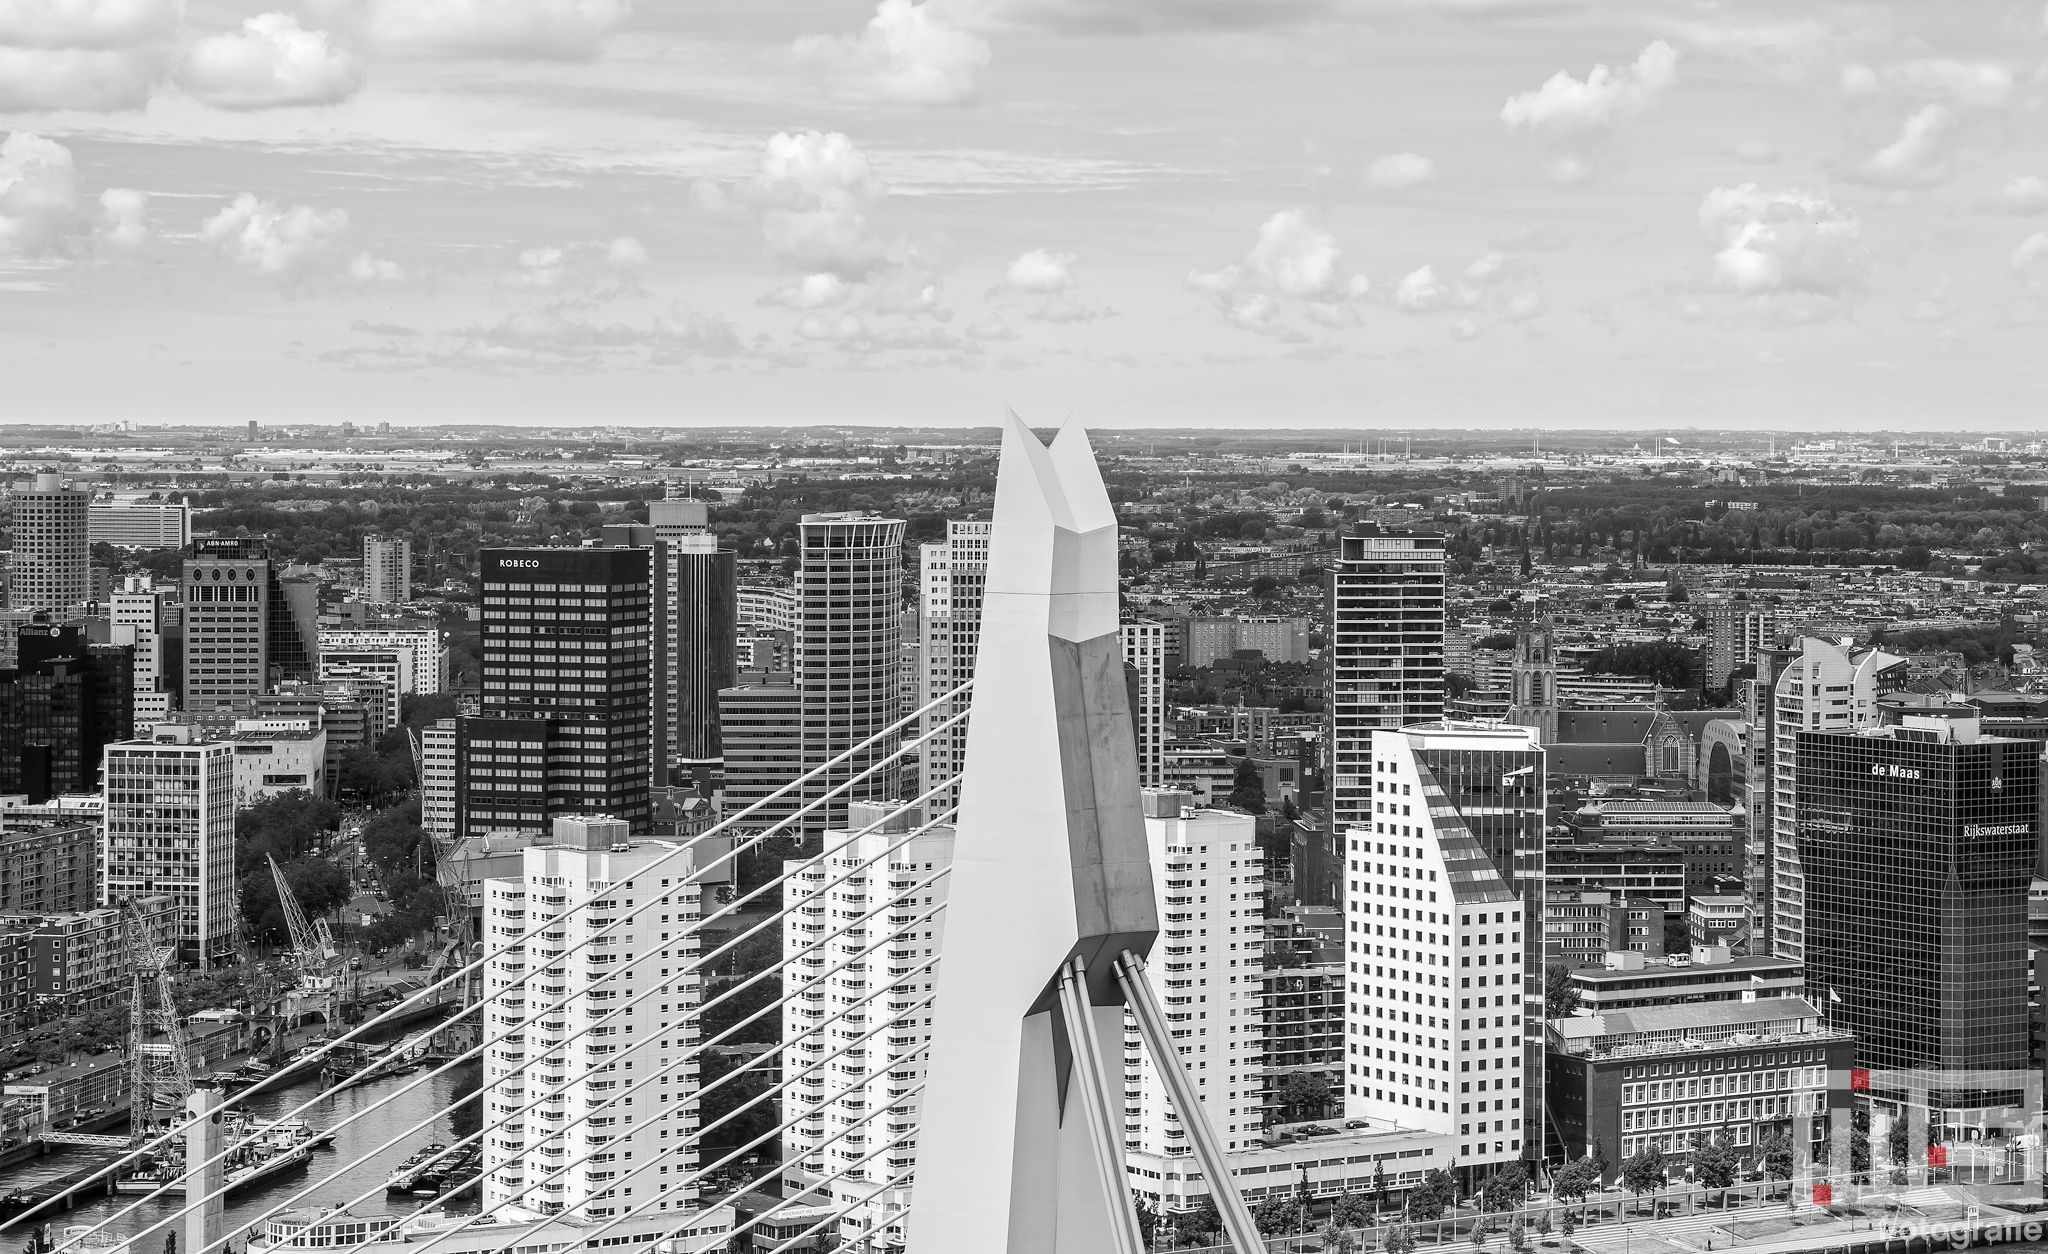 De pyloon van de Erasmusbrug in Rotterdam met op de achtergrond het stadscentrum